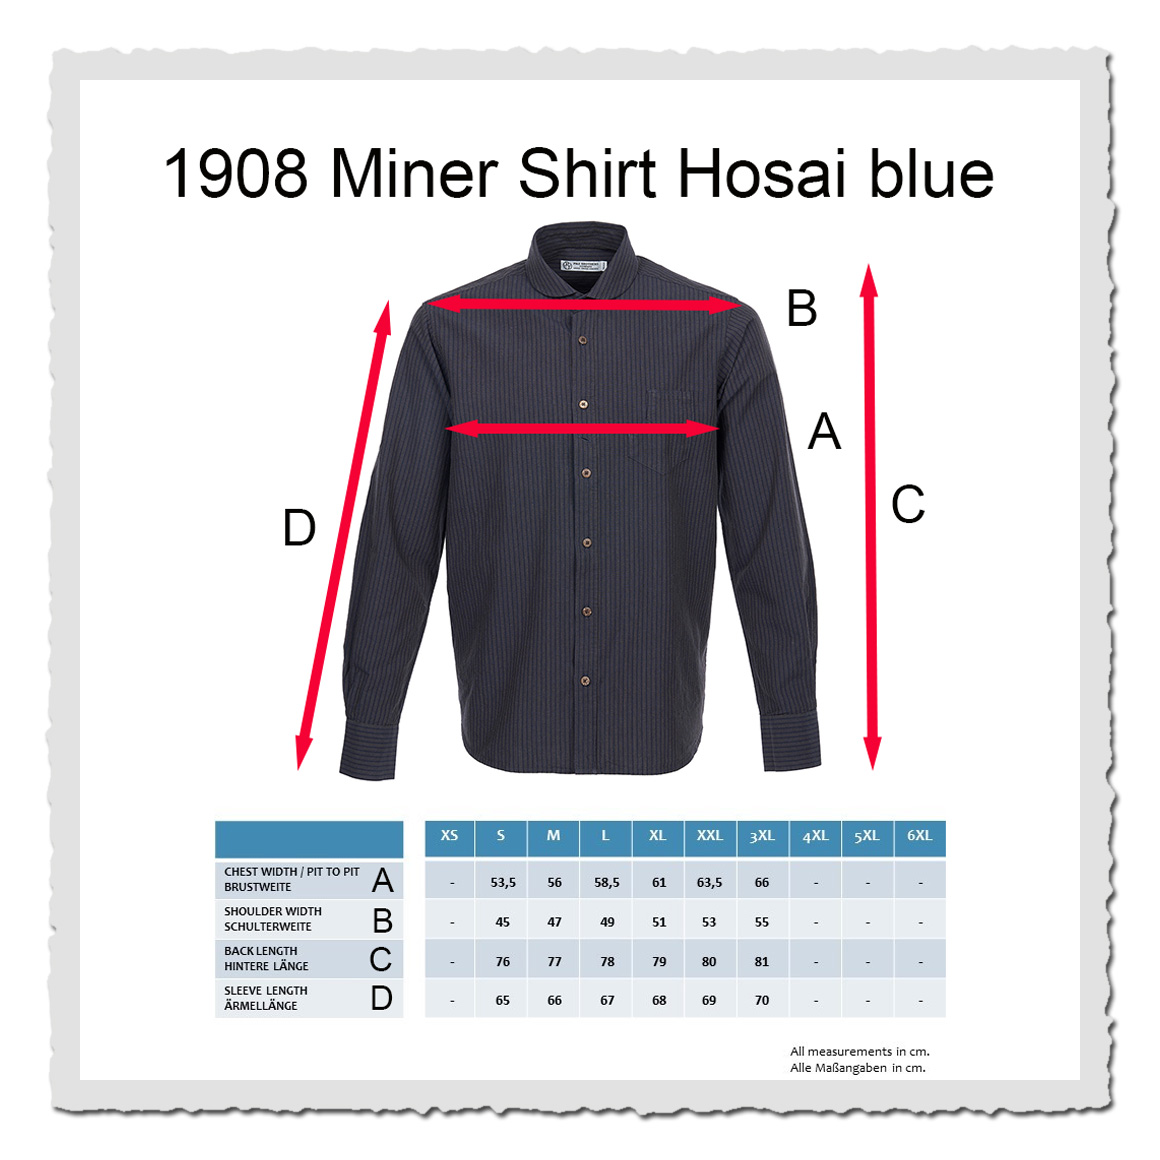 1908 Miner Shirt Hosai blue